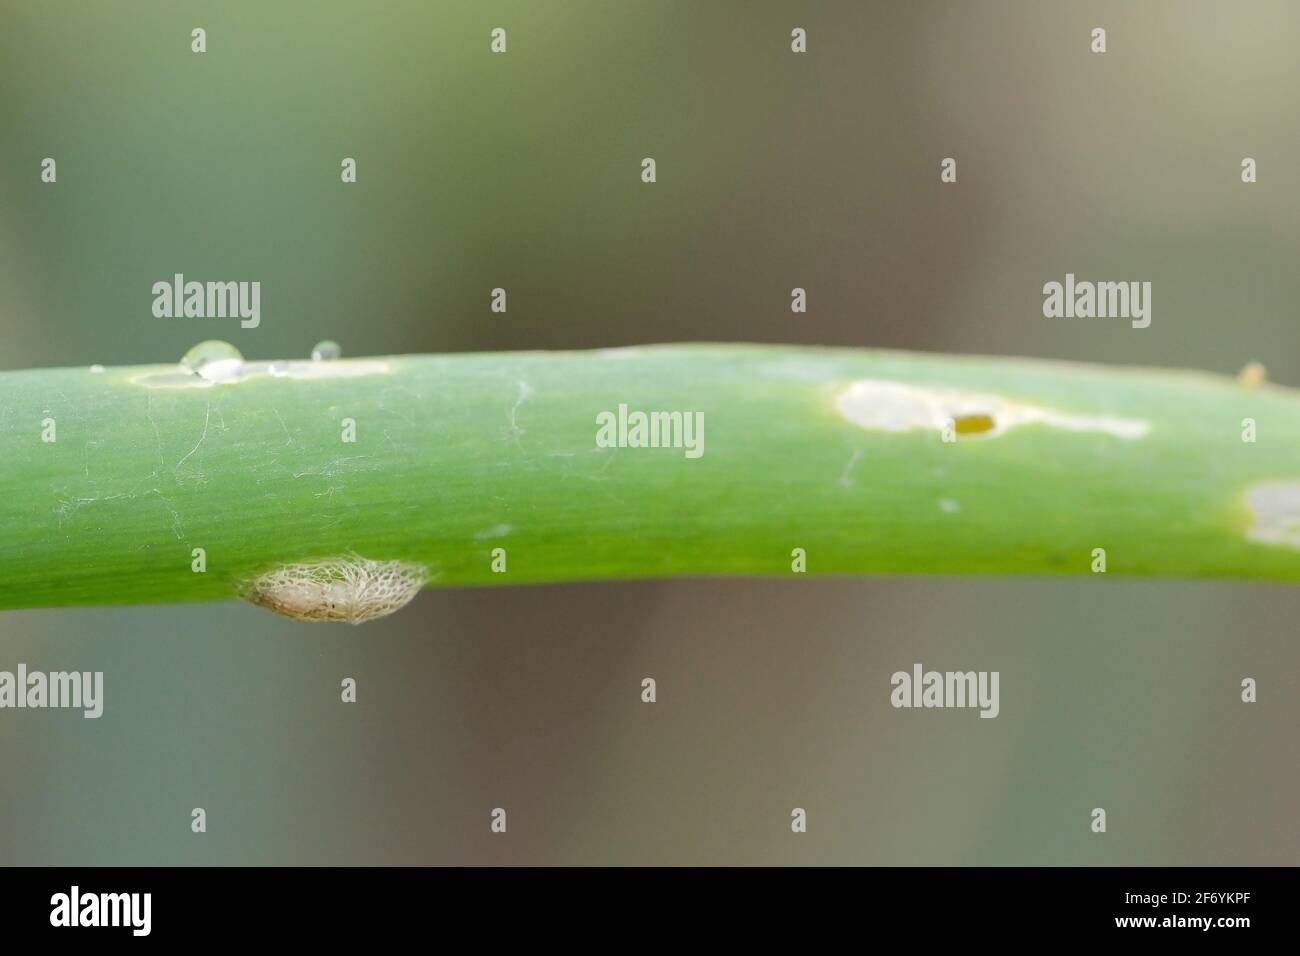 Pupa of leek moth or onion leaf miner (Acrolepiopsis assectella) family Acrolepiidae. It is Invasive speciesa pest of leek crops. Larvae feed on Alliu Stock Photo